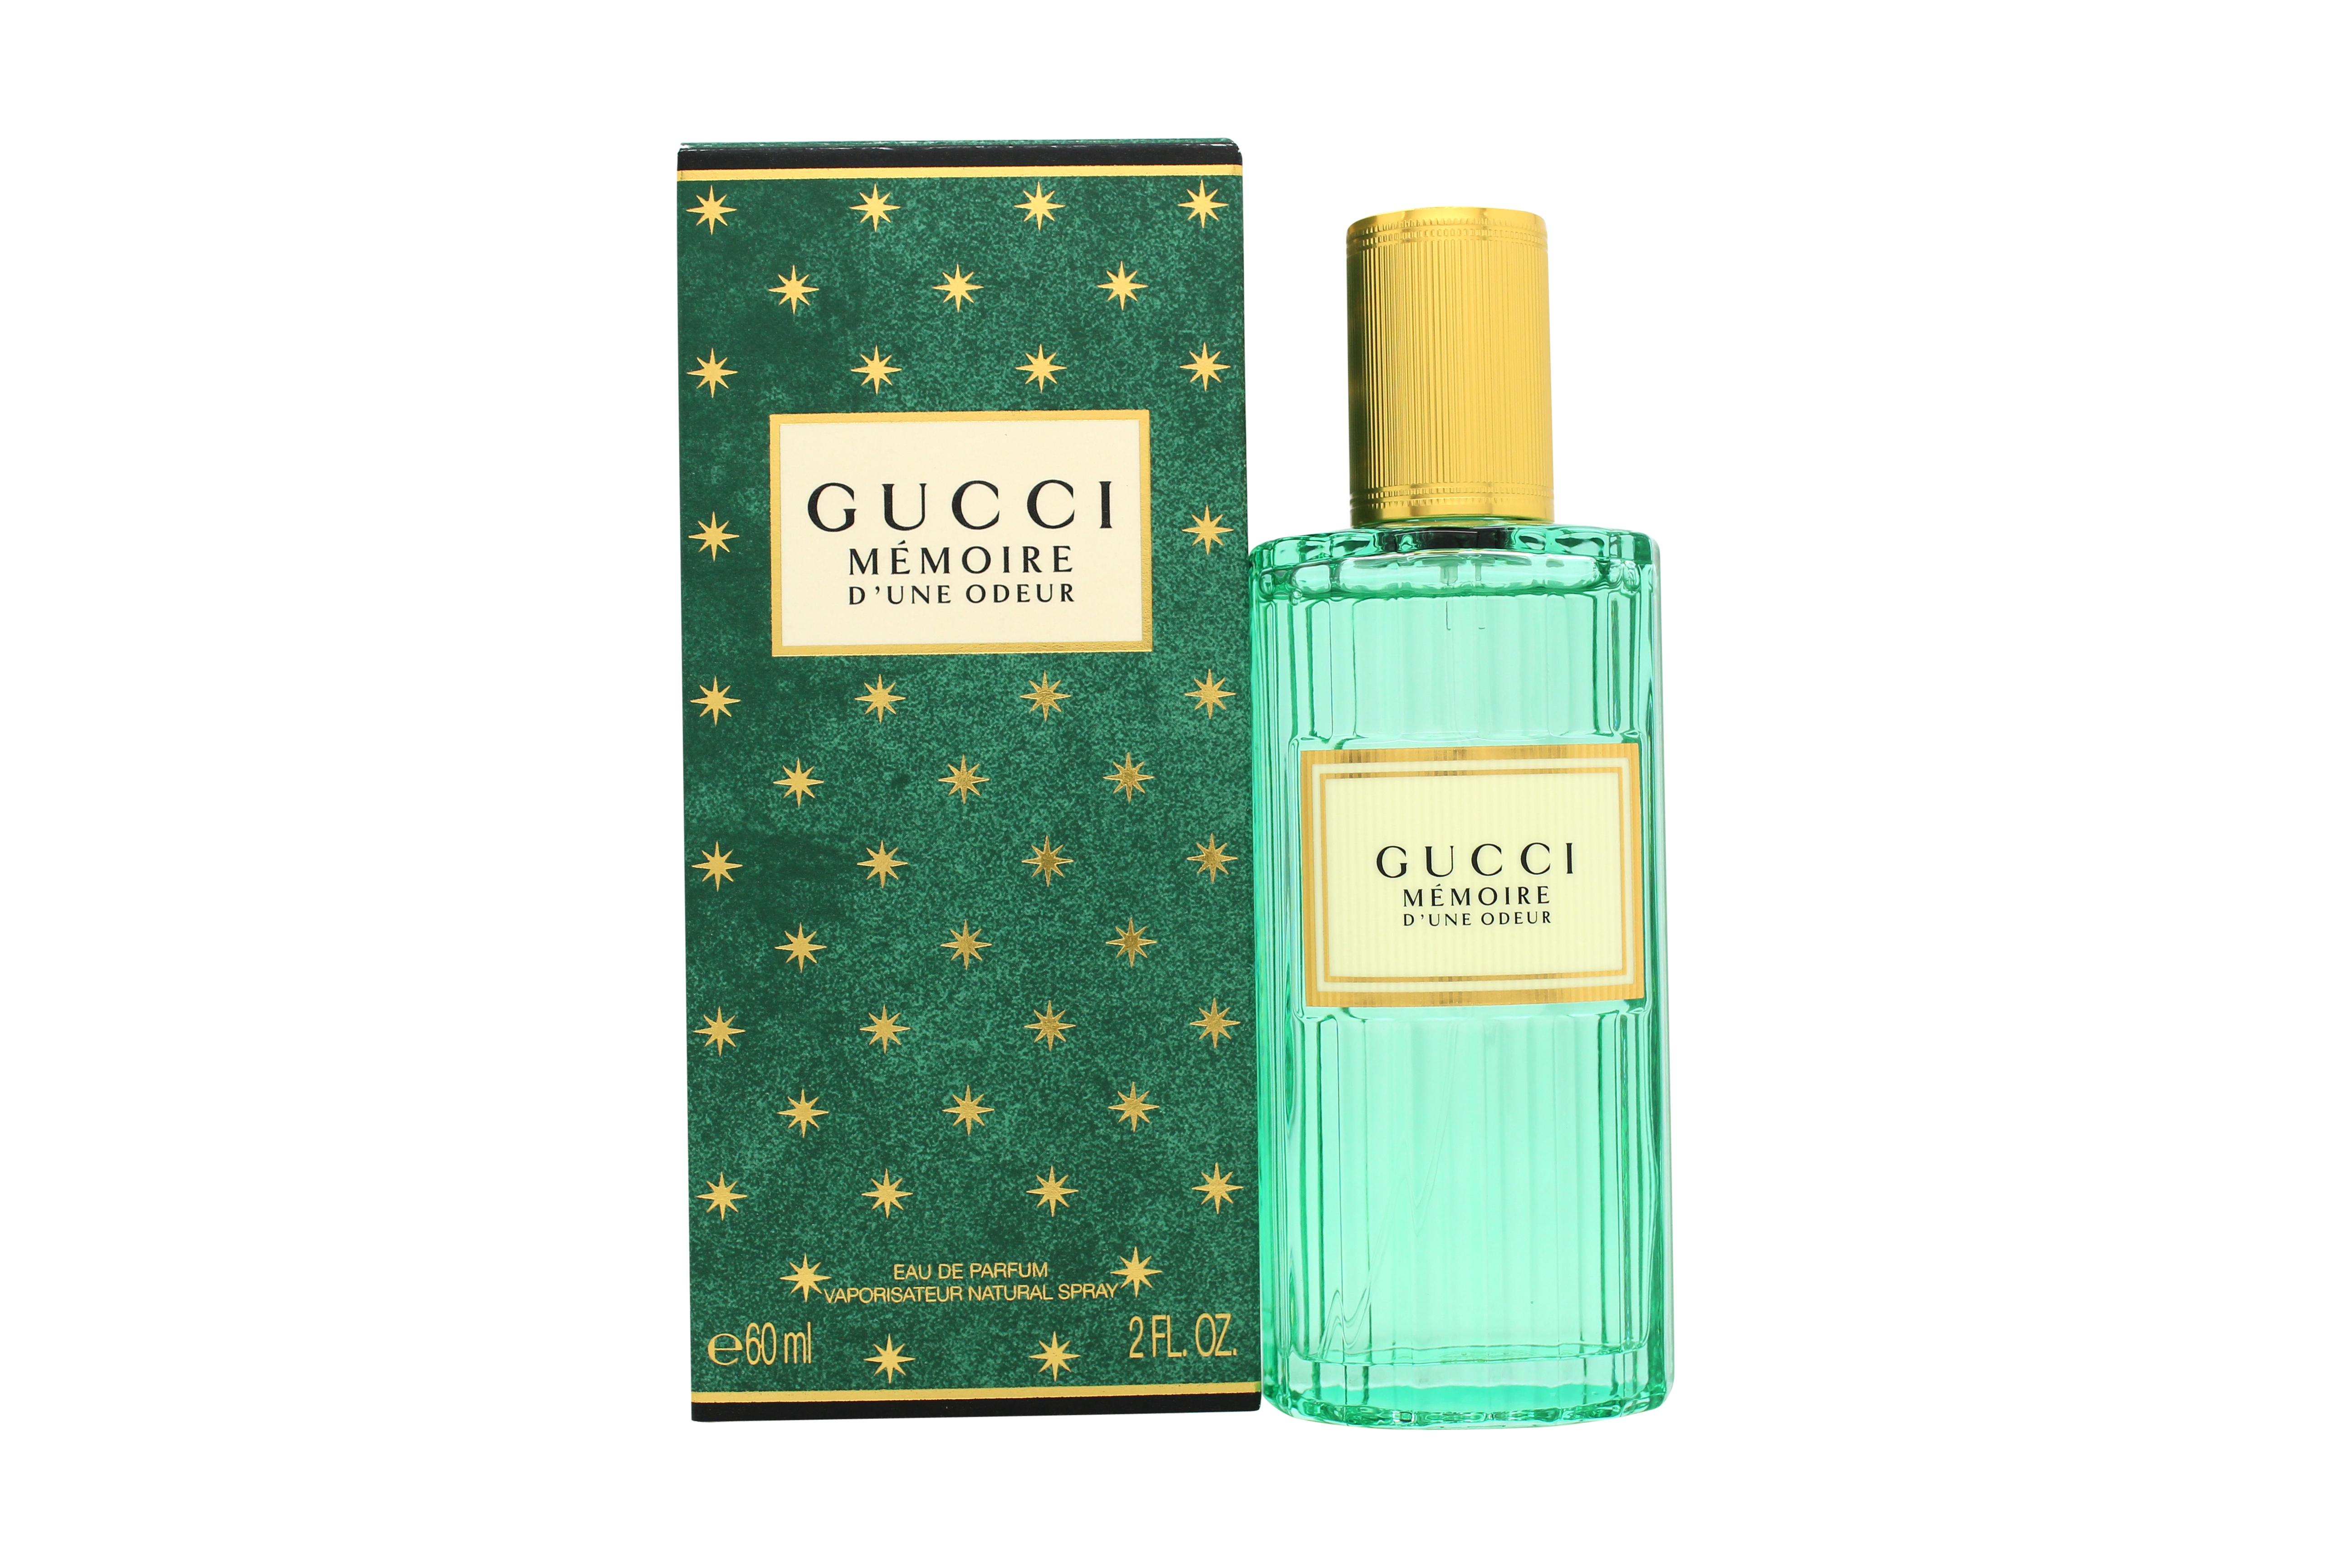 Gucci Memoire d'une Odeur Eau de Parfum 60ml Spray